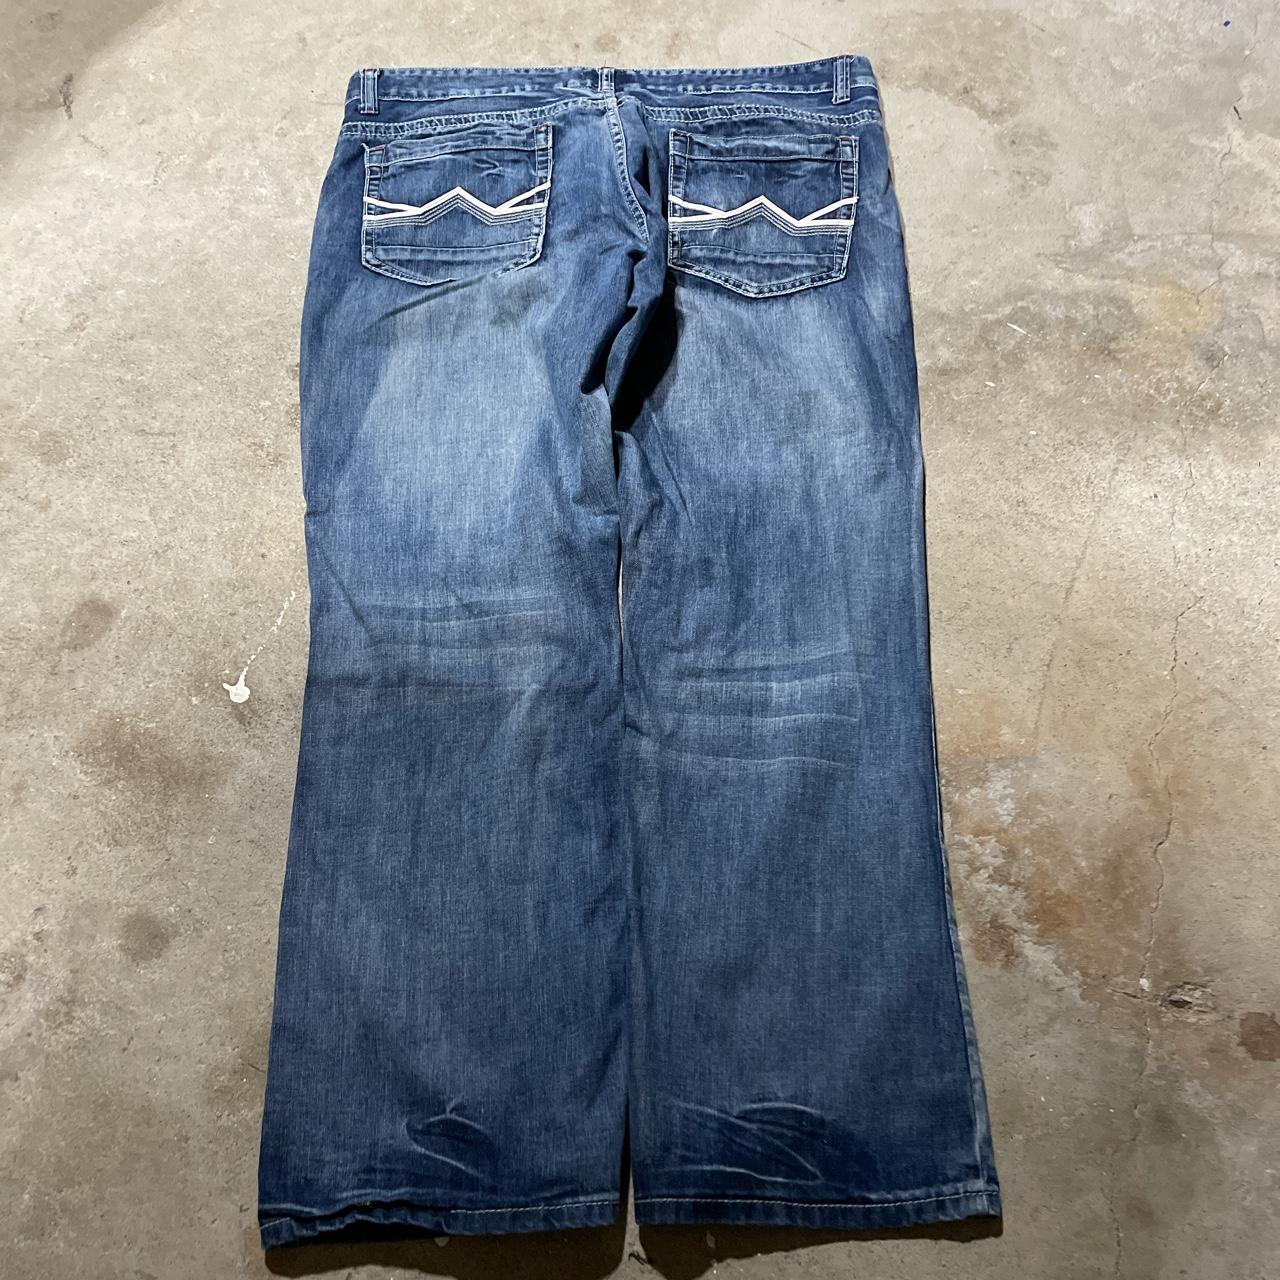 Vintage BAGGY Jeans SLIGHTLY BAGGY SLIGHTLY... - Depop